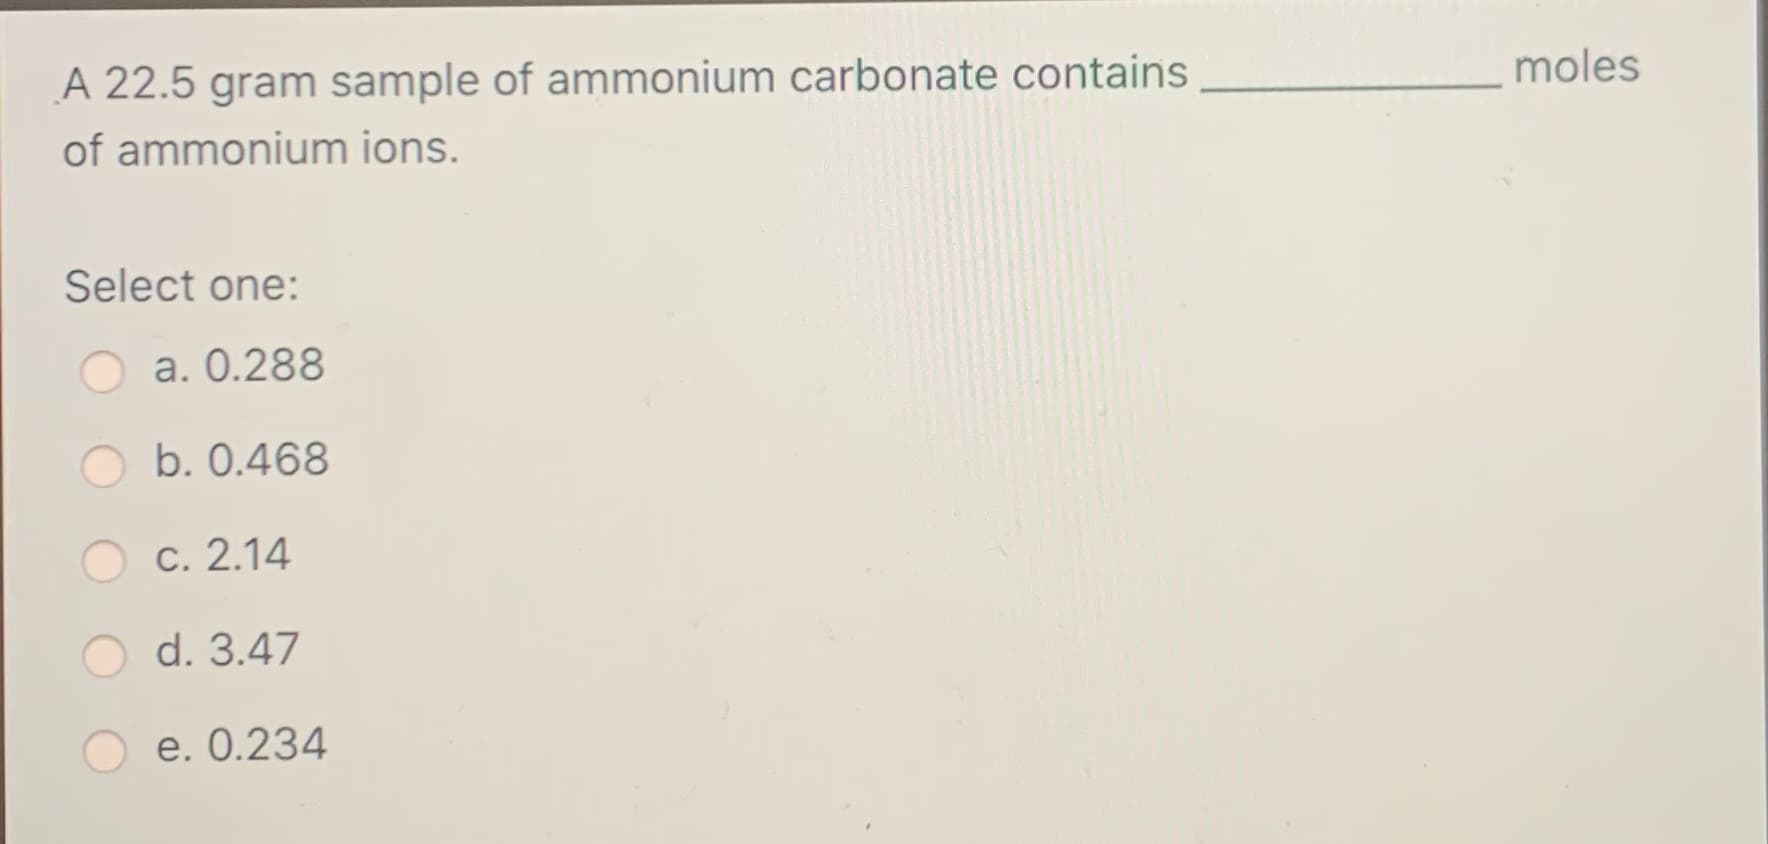 moles
A 22.5 gram sample of ammonium carbonate contains
of ammonium ions.
Select one:
a. 0.288
b. 0.468
O c. 2.14
O d. 3.47
O e. 0.234
